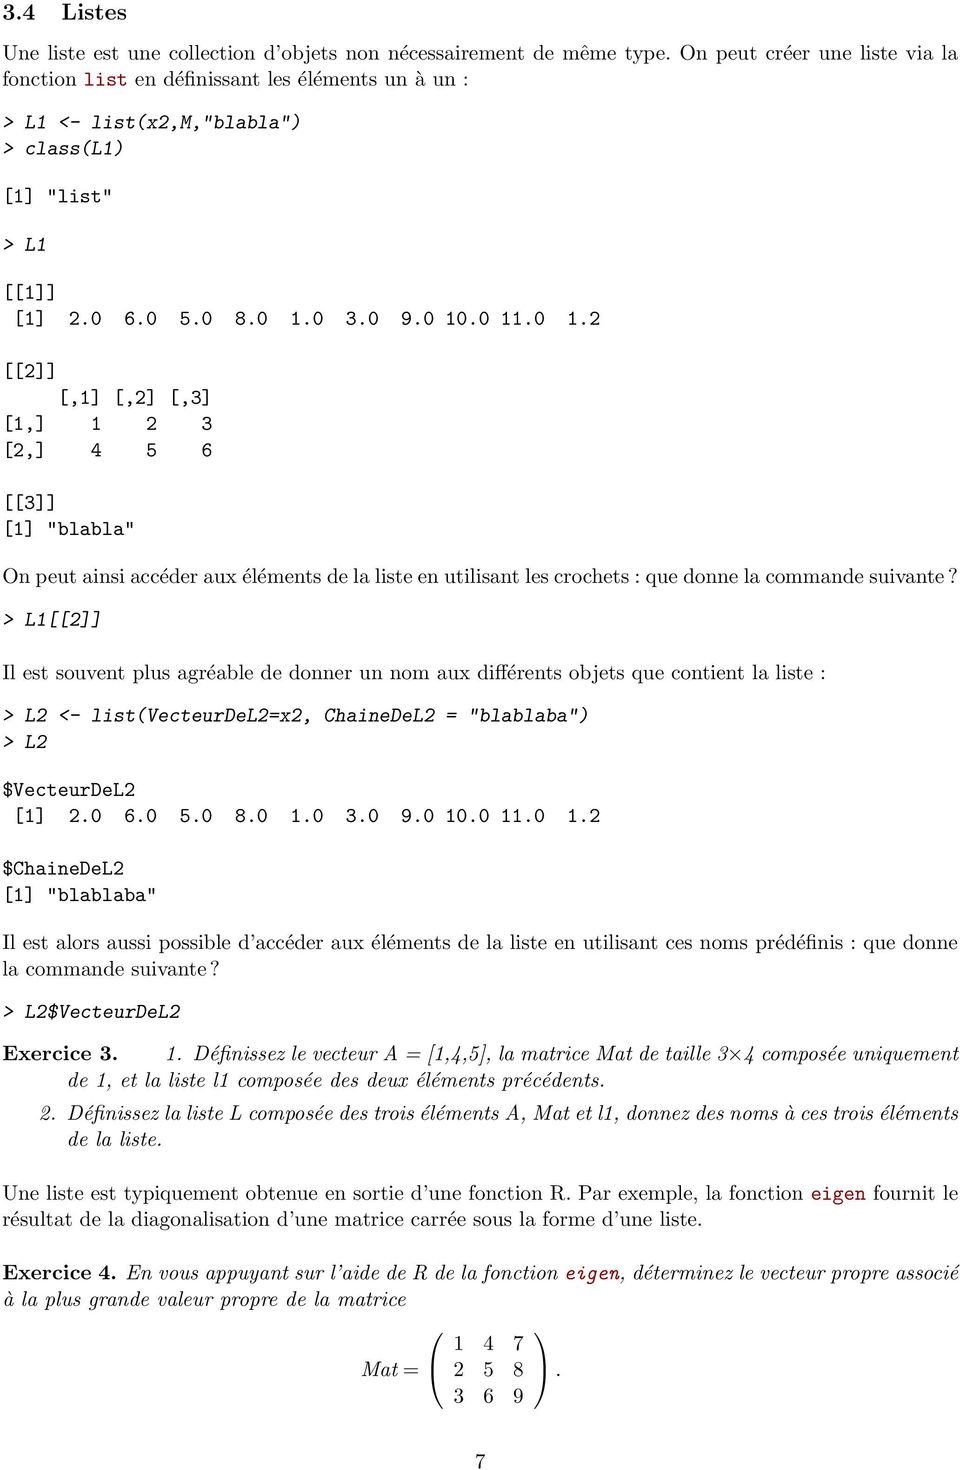 0 3.0 9.0 10.0 11.0 1.2 [[2]] [,1] [,2] [,3] [1,] 1 2 3 [2,] 4 5 6 [[3]] [1] "blabla" On peut ainsi accéder aux éléments de la liste en utilisant les crochets : que donne la commande suivante?